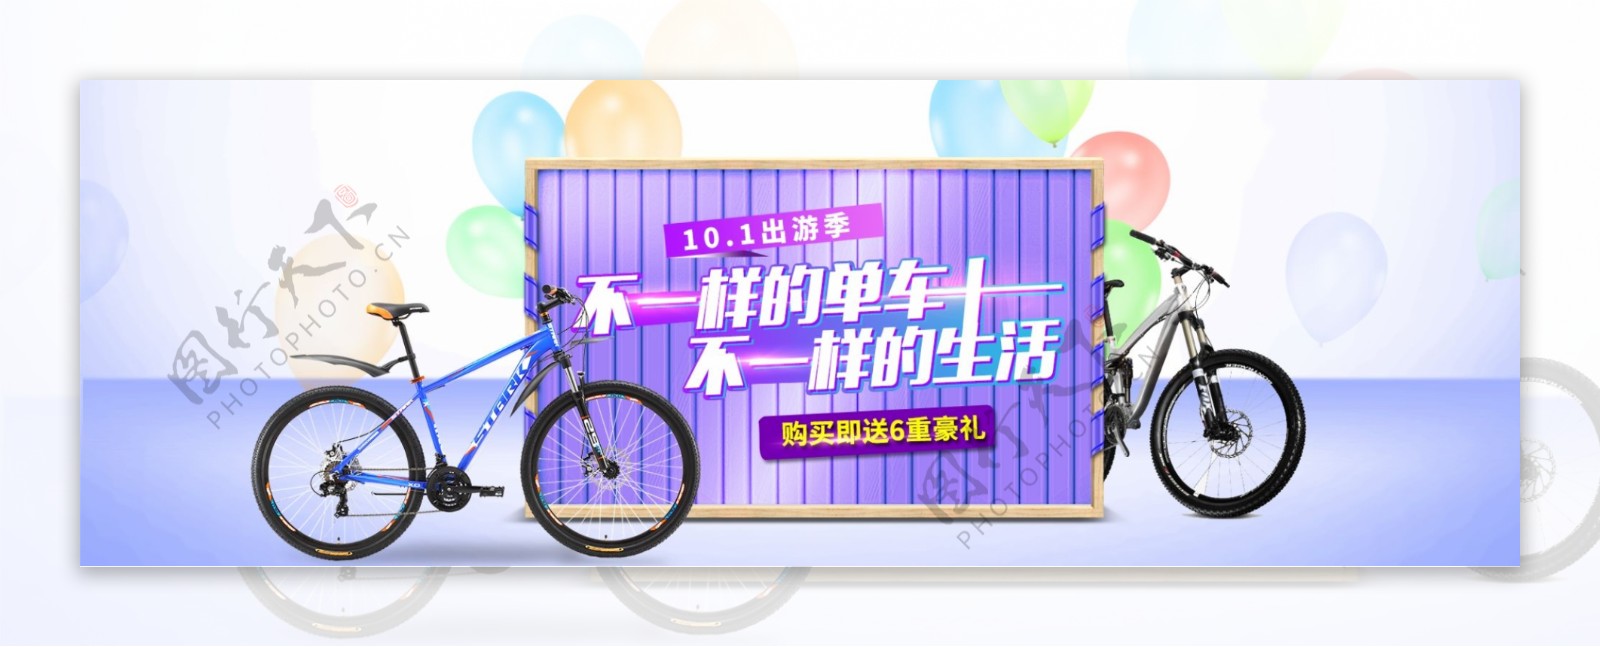 电商淘宝天猫国庆出游季单车自行车促销海报banner模板